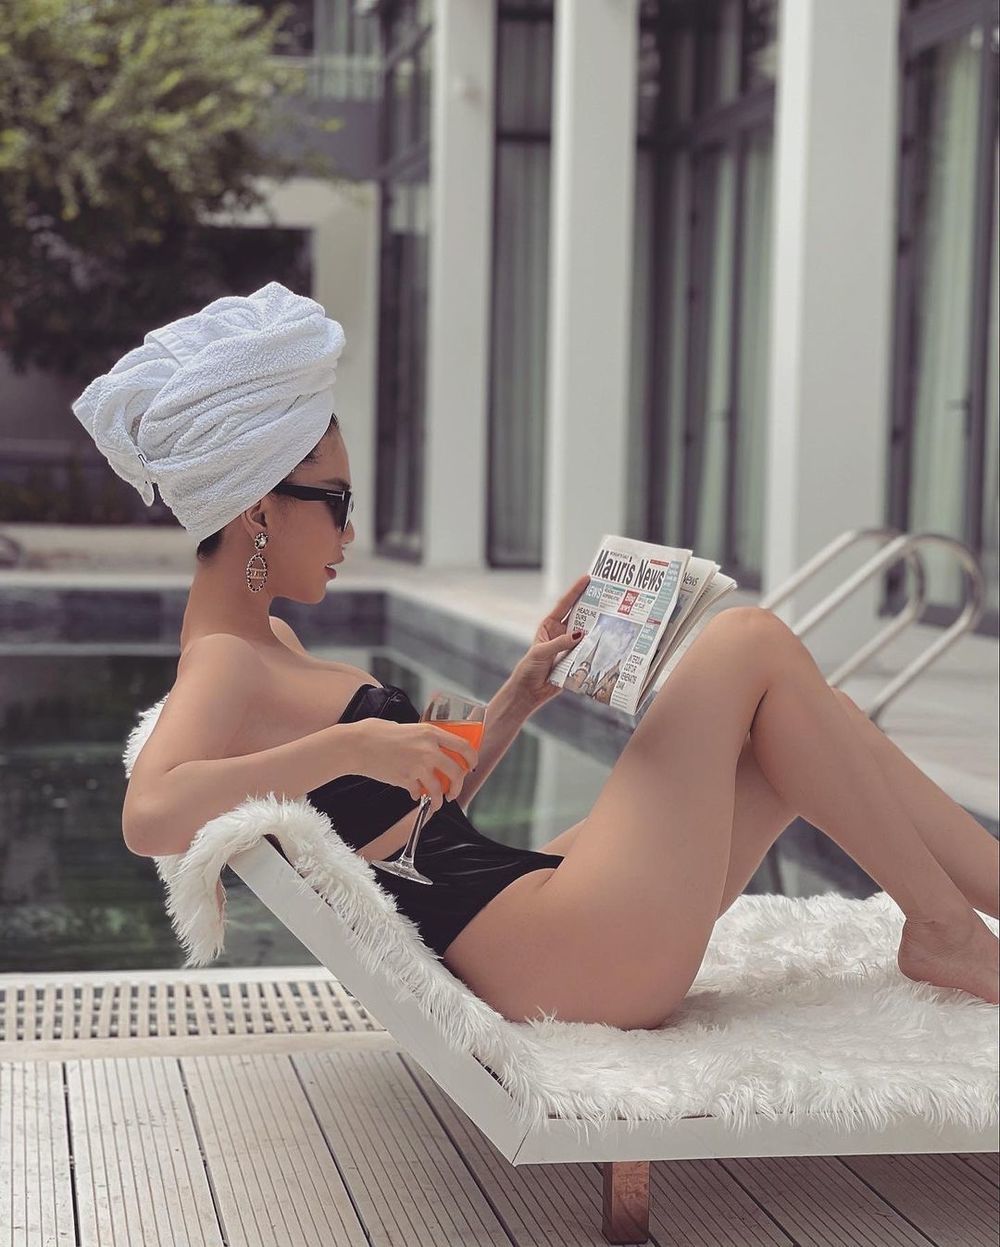 Hồ bơi cũng là địa điểm không thể bỏ qua của người đẹp có niềm đam mê với bikini như Ngọc Trinh. (Ảnh: Instagram ngoctrinh89)